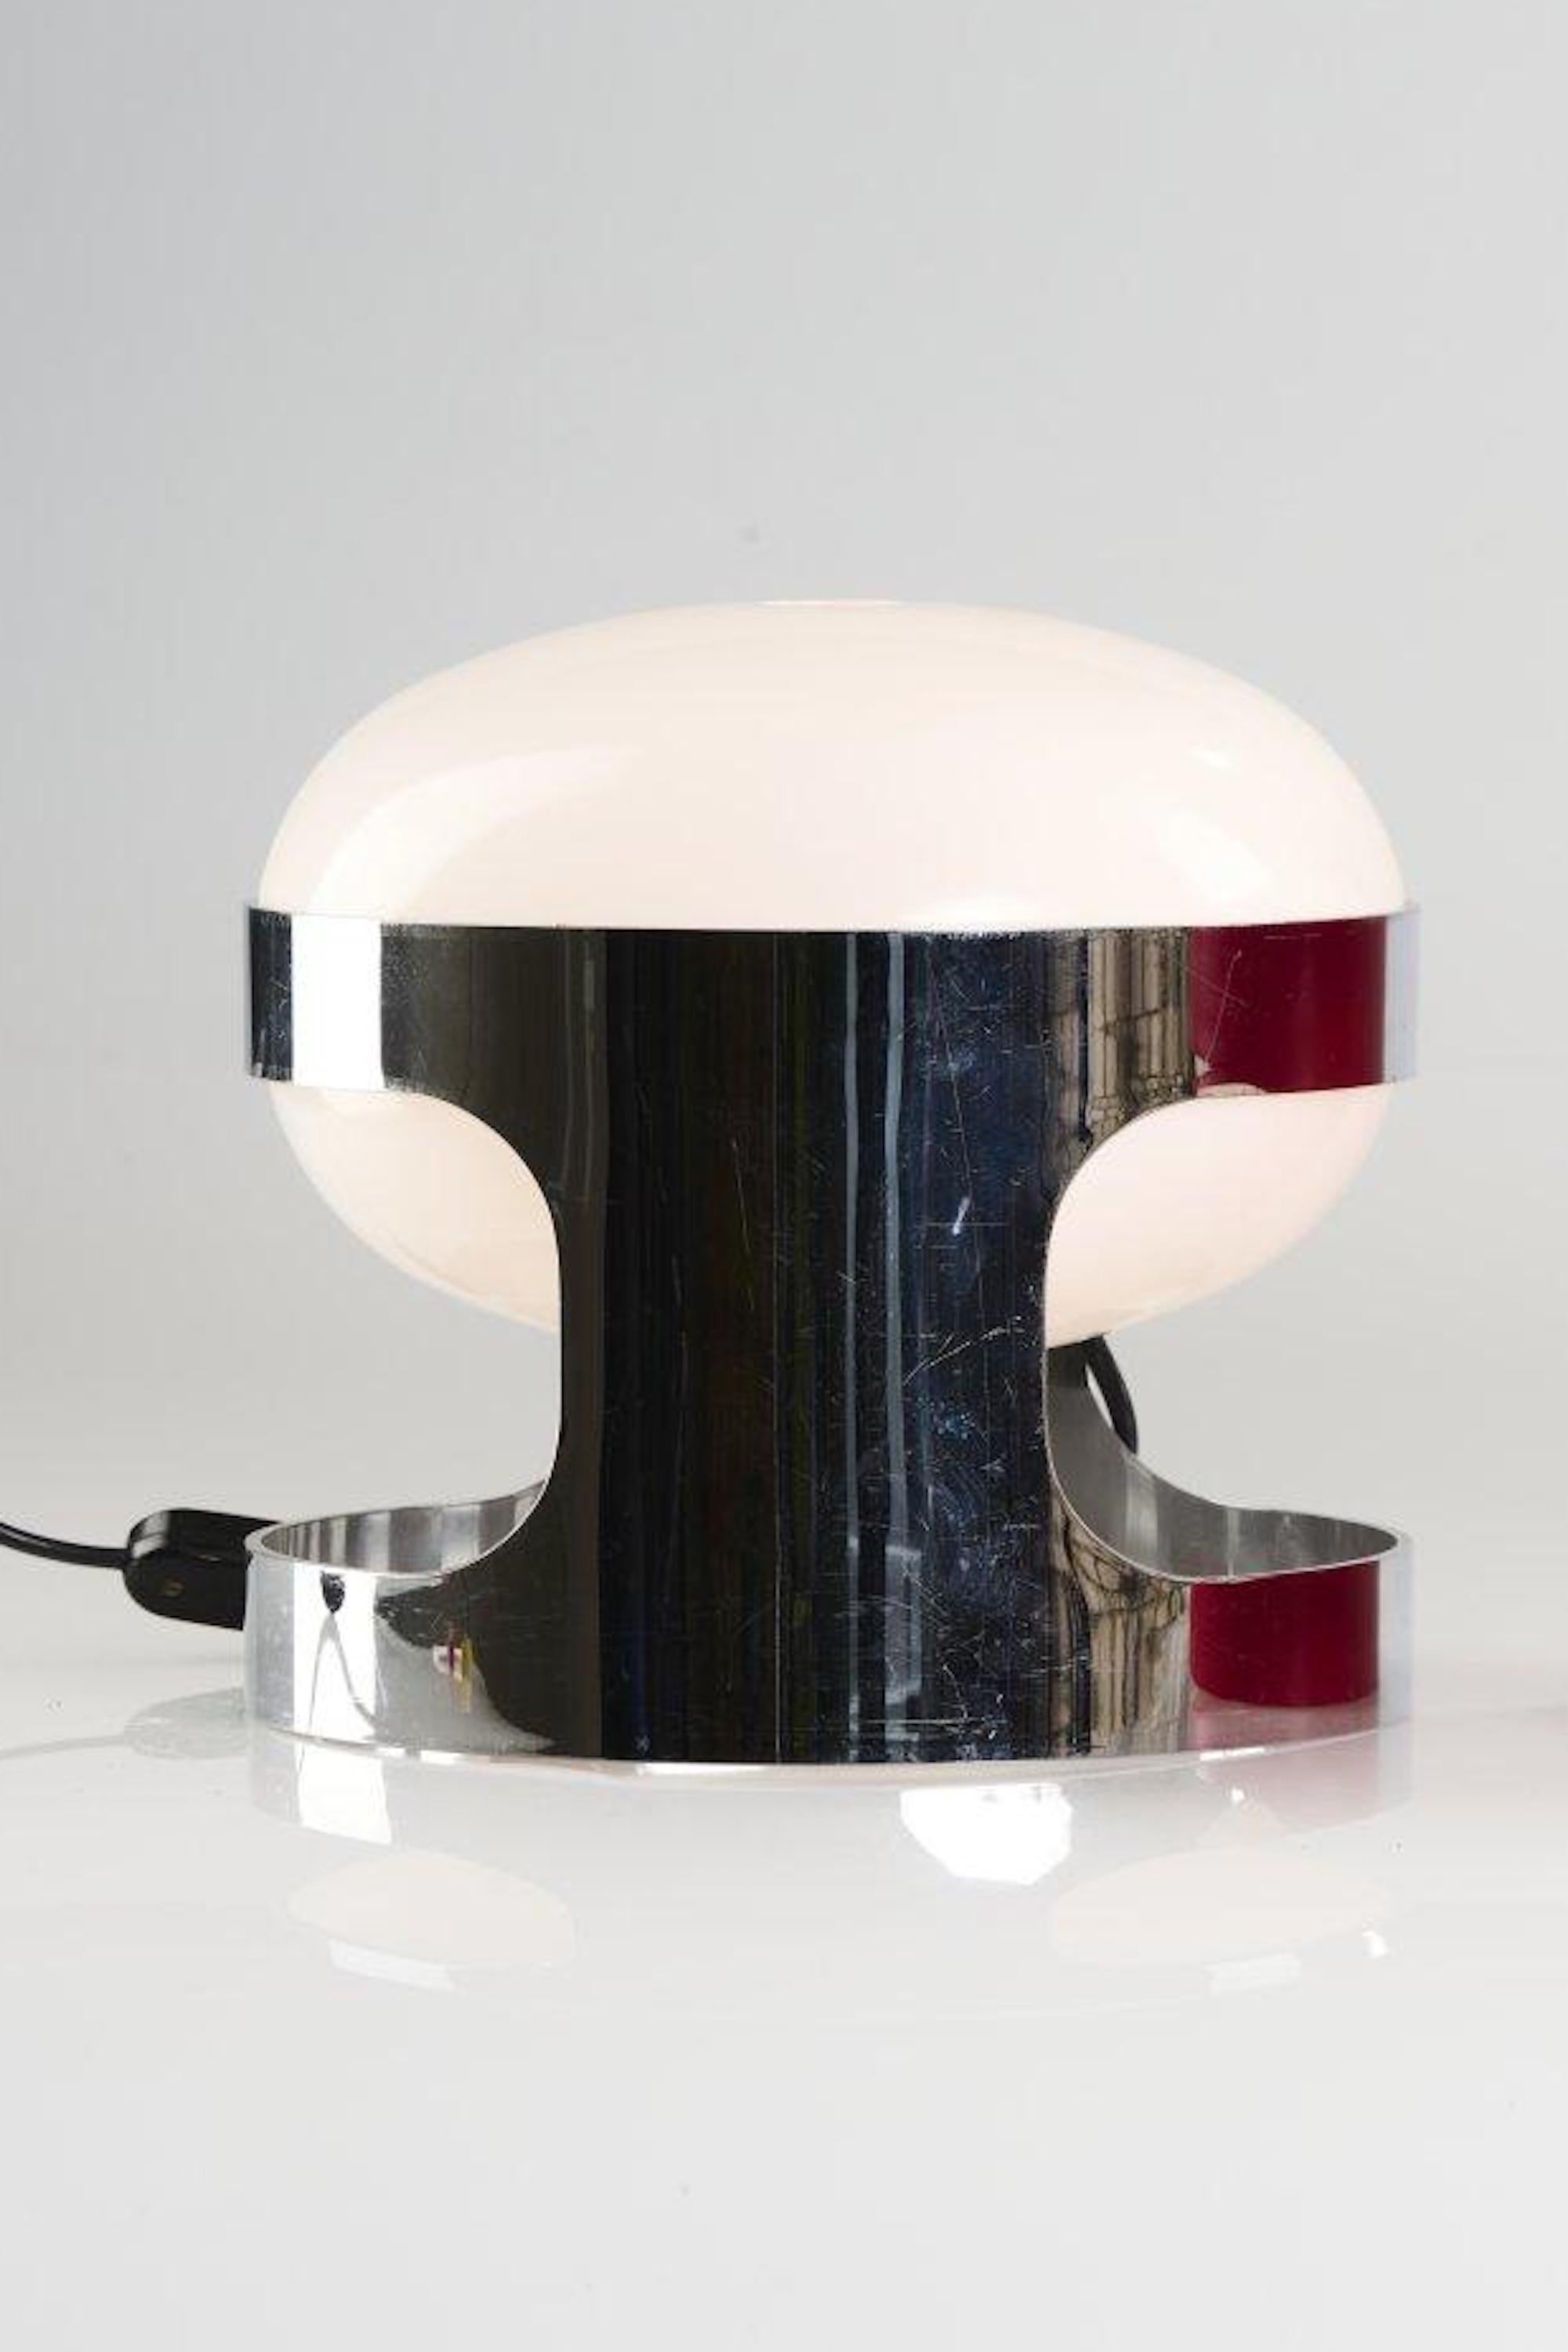 La lampe de table 'KD 27' a été conçue par Joe Colombo en 1967.

H. 23 cm, Ø 25 cm.

Fabriqué par Kartell, Noviglio.

Plastique, blanc, chromé.

Réf. Gramigna, Repertorio 1950 - 1980, Milan 2001, p. 262.

Bon état.